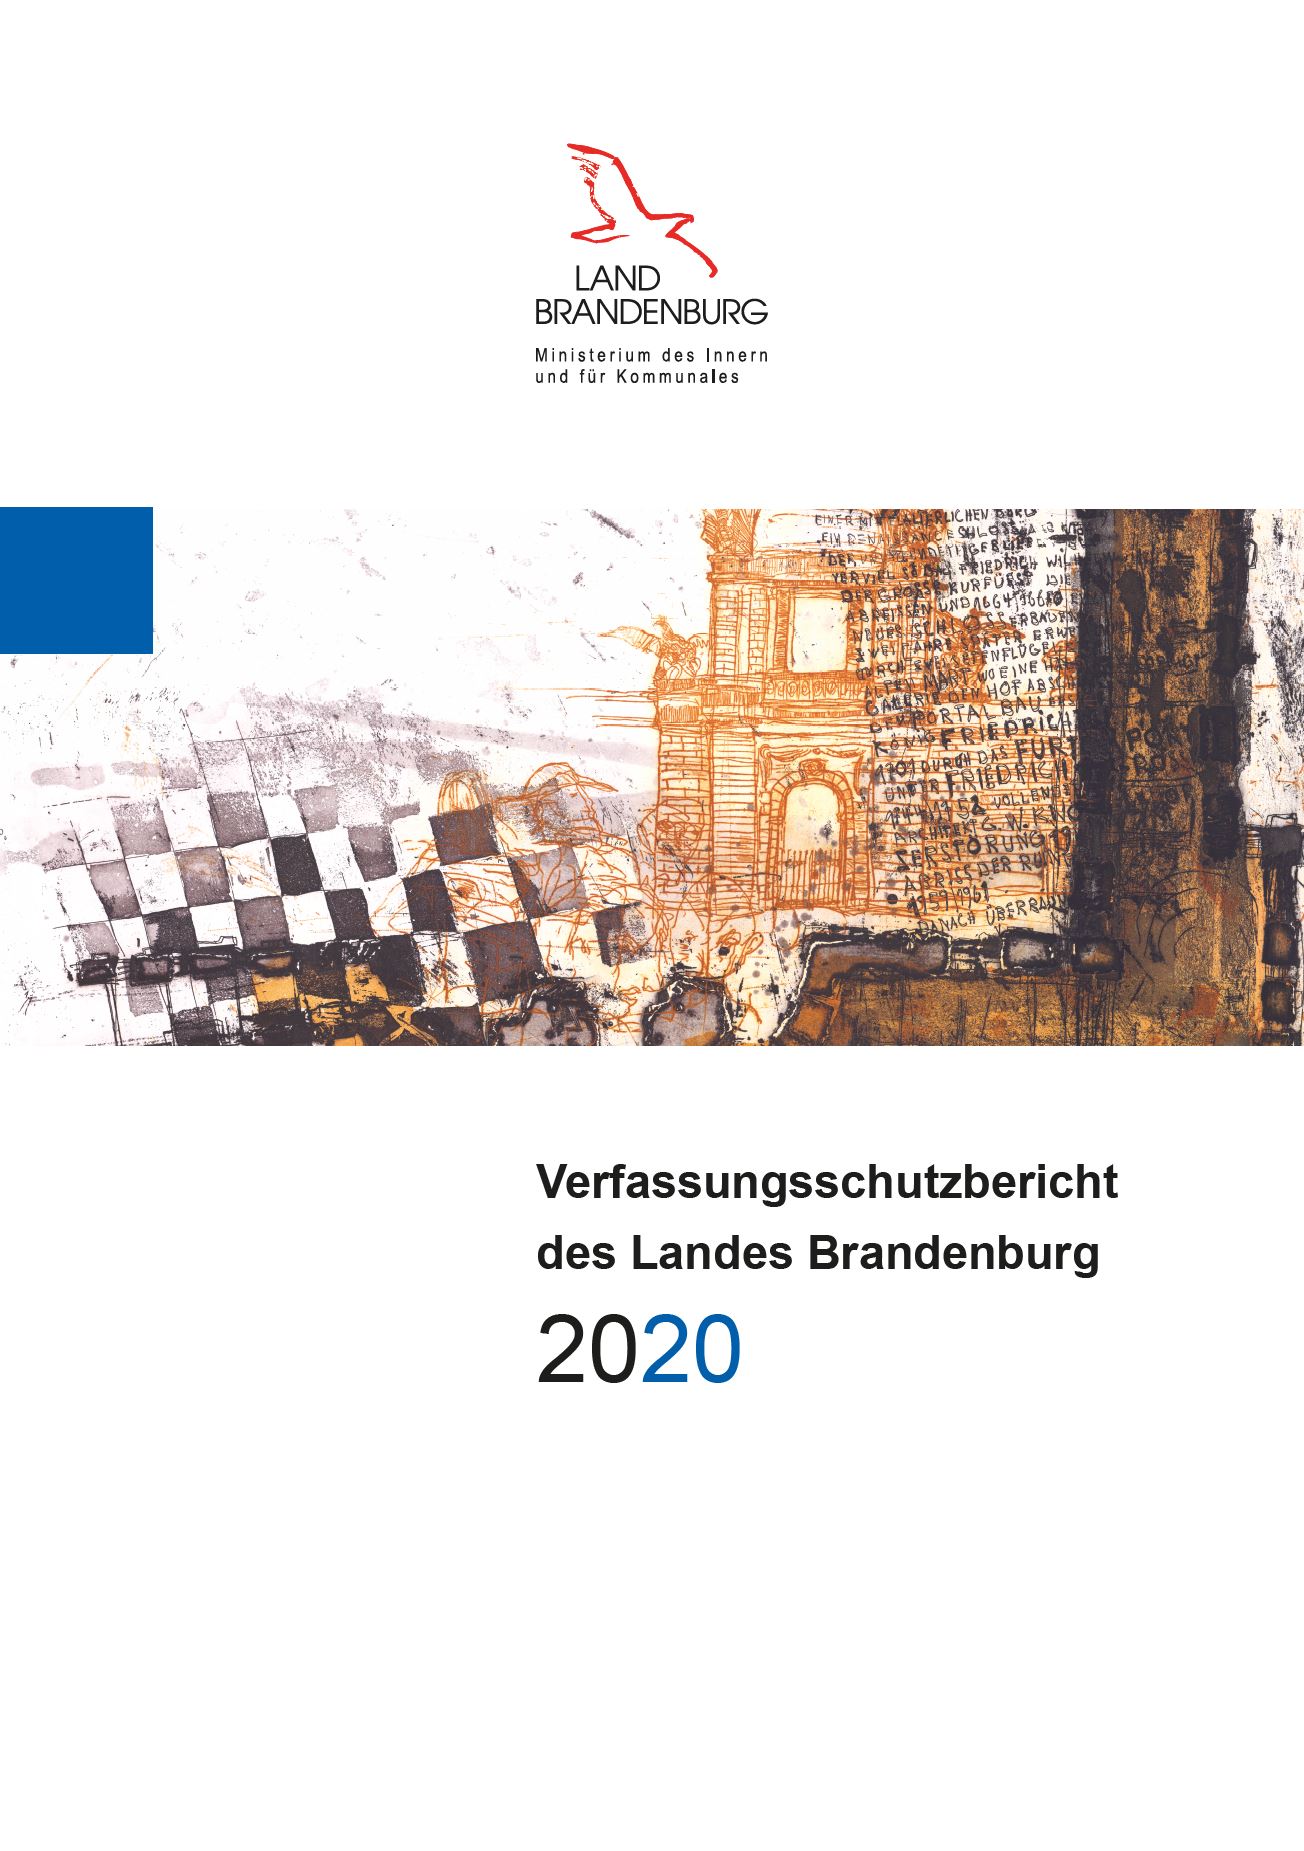 Bild vergrößern (Bild: Verfassungsschutzbericht 2020)